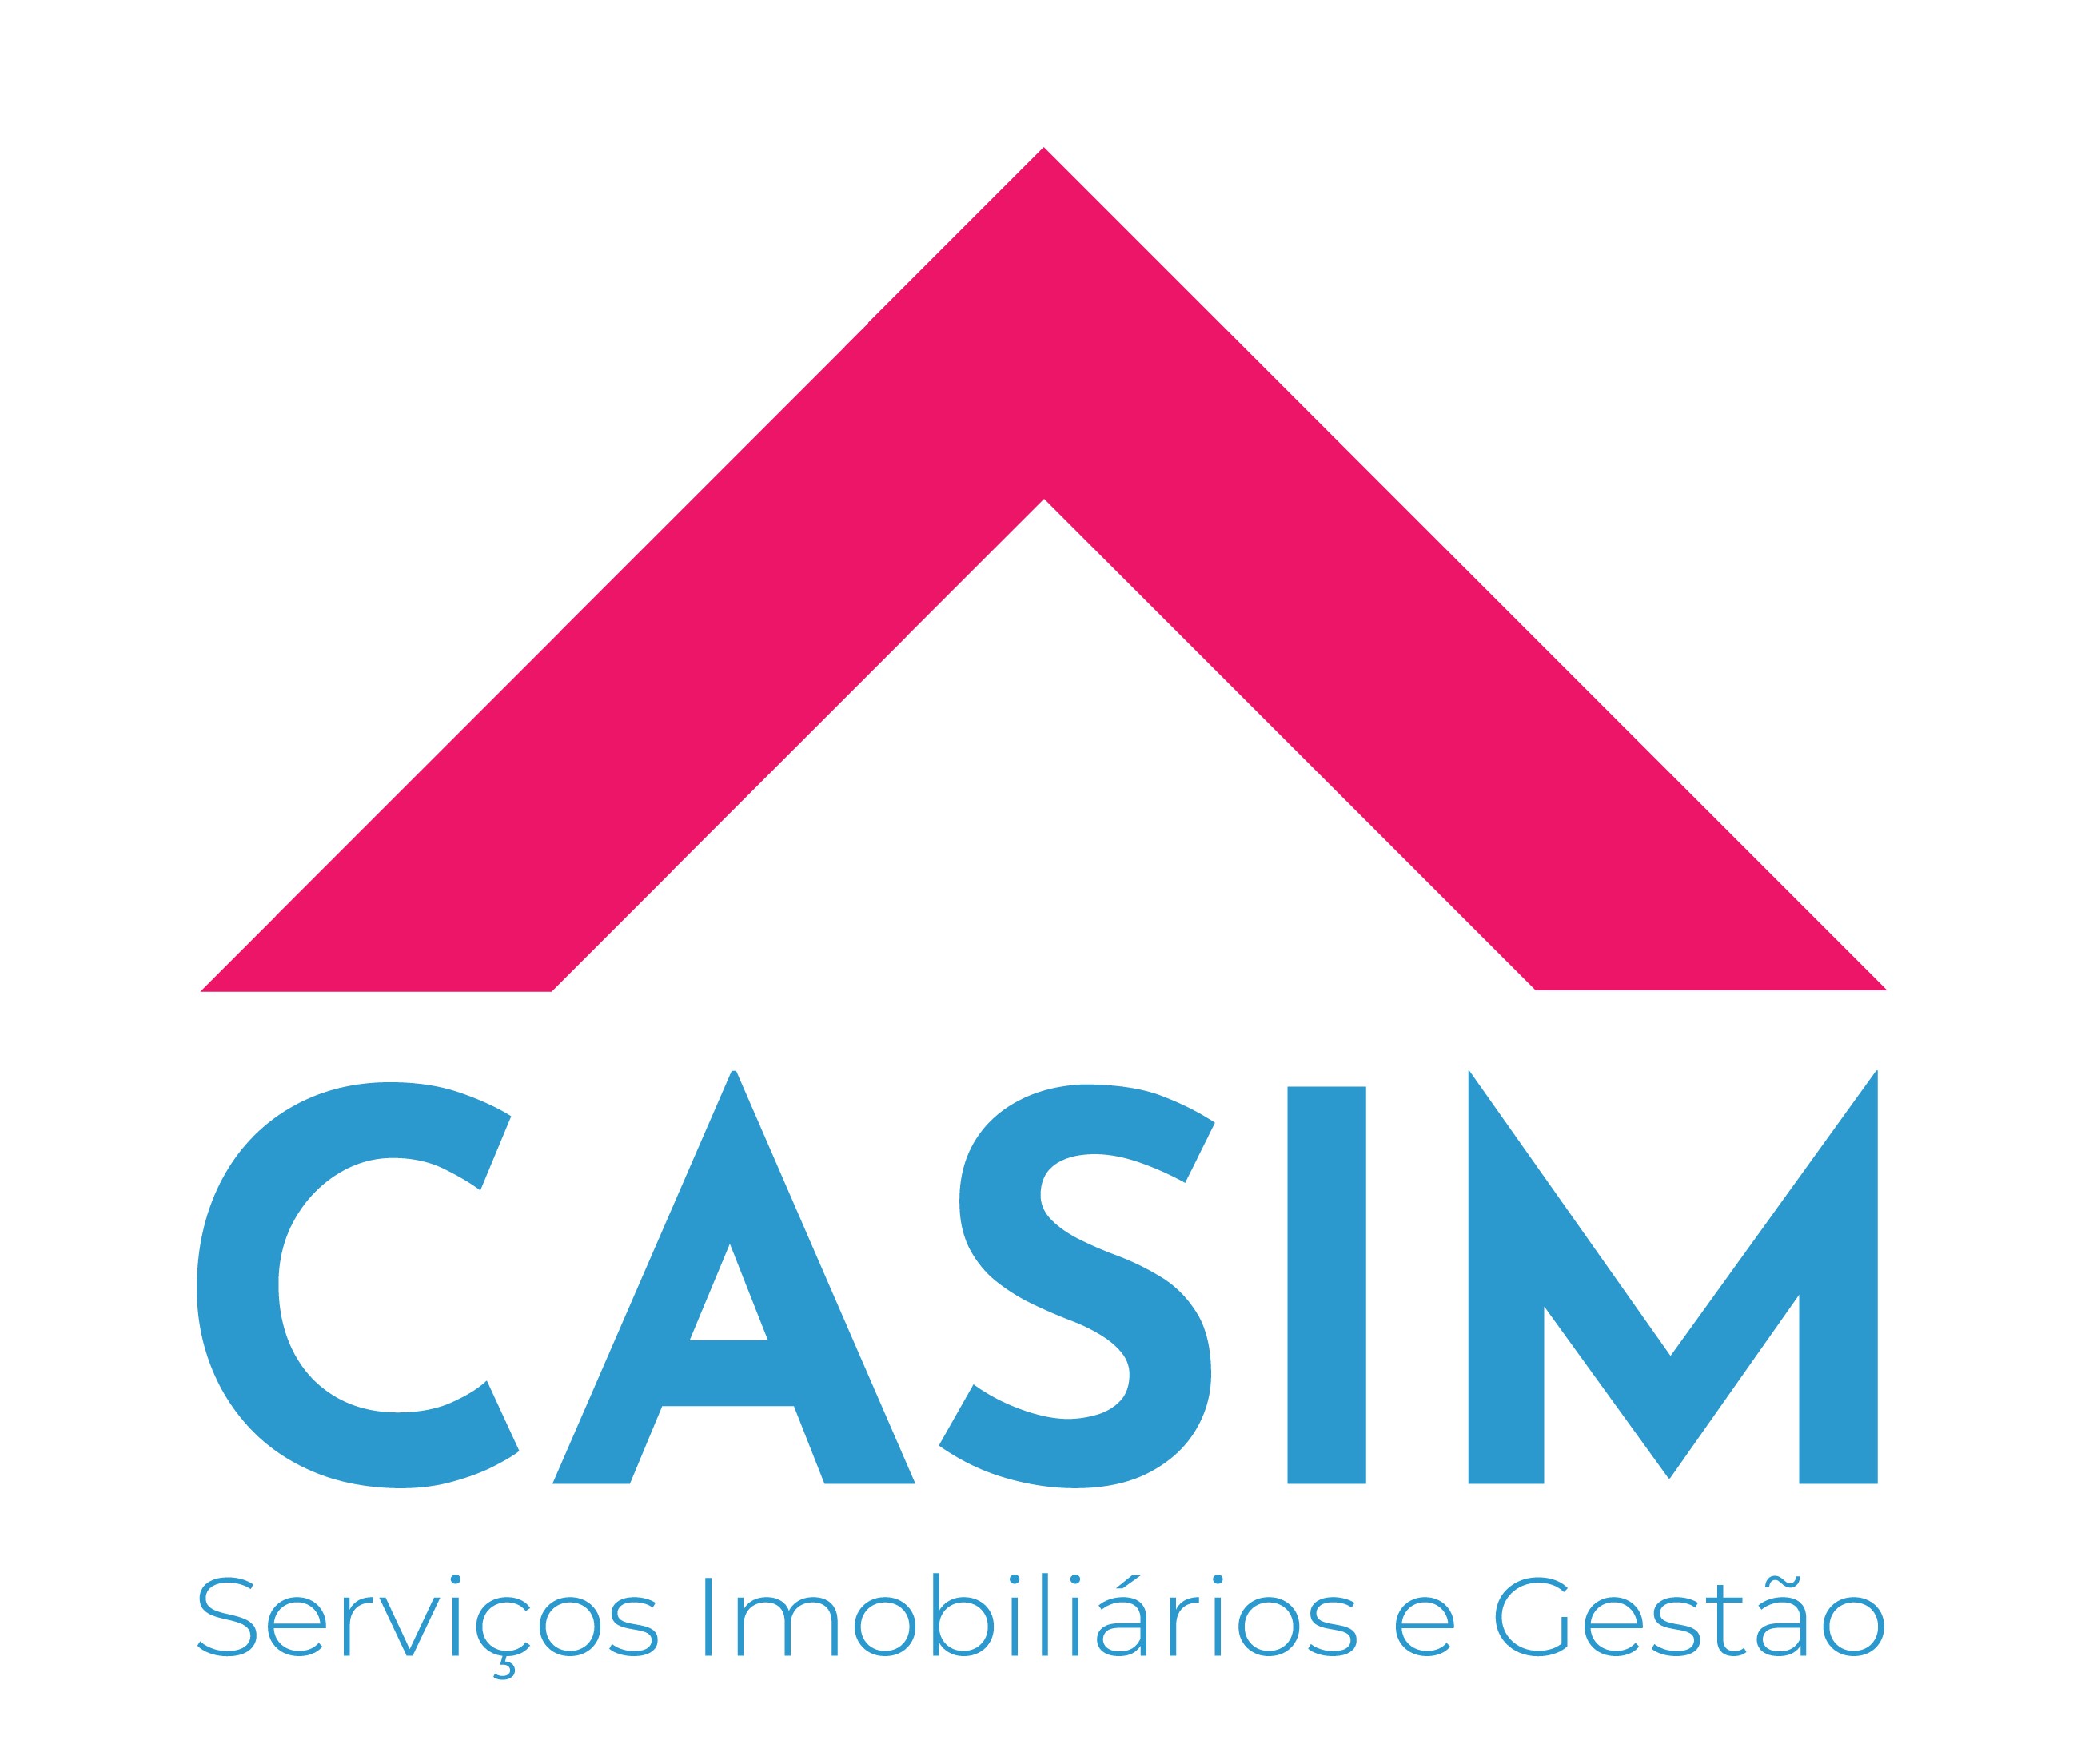 CASIM - SERVIOS IMOBILIRIOS E GESTO (by Susana Ferreira)